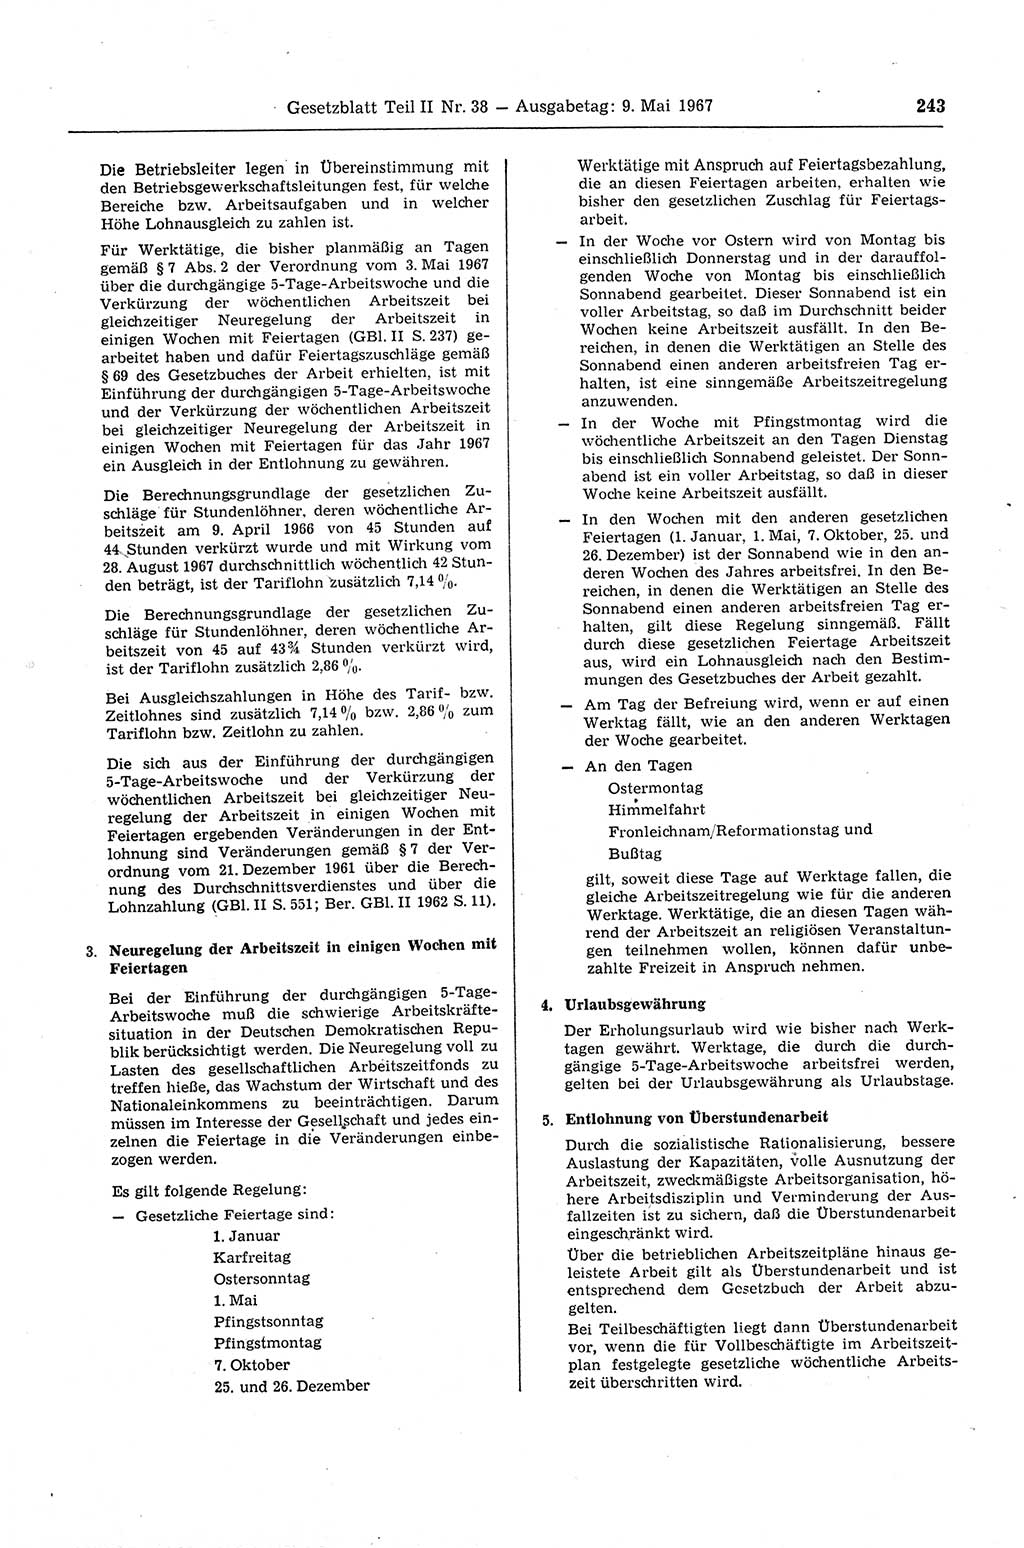 Gesetzblatt (GBl.) der Deutschen Demokratischen Republik (DDR) Teil ⅠⅠ 1967, Seite 243 (GBl. DDR ⅠⅠ 1967, S. 243)